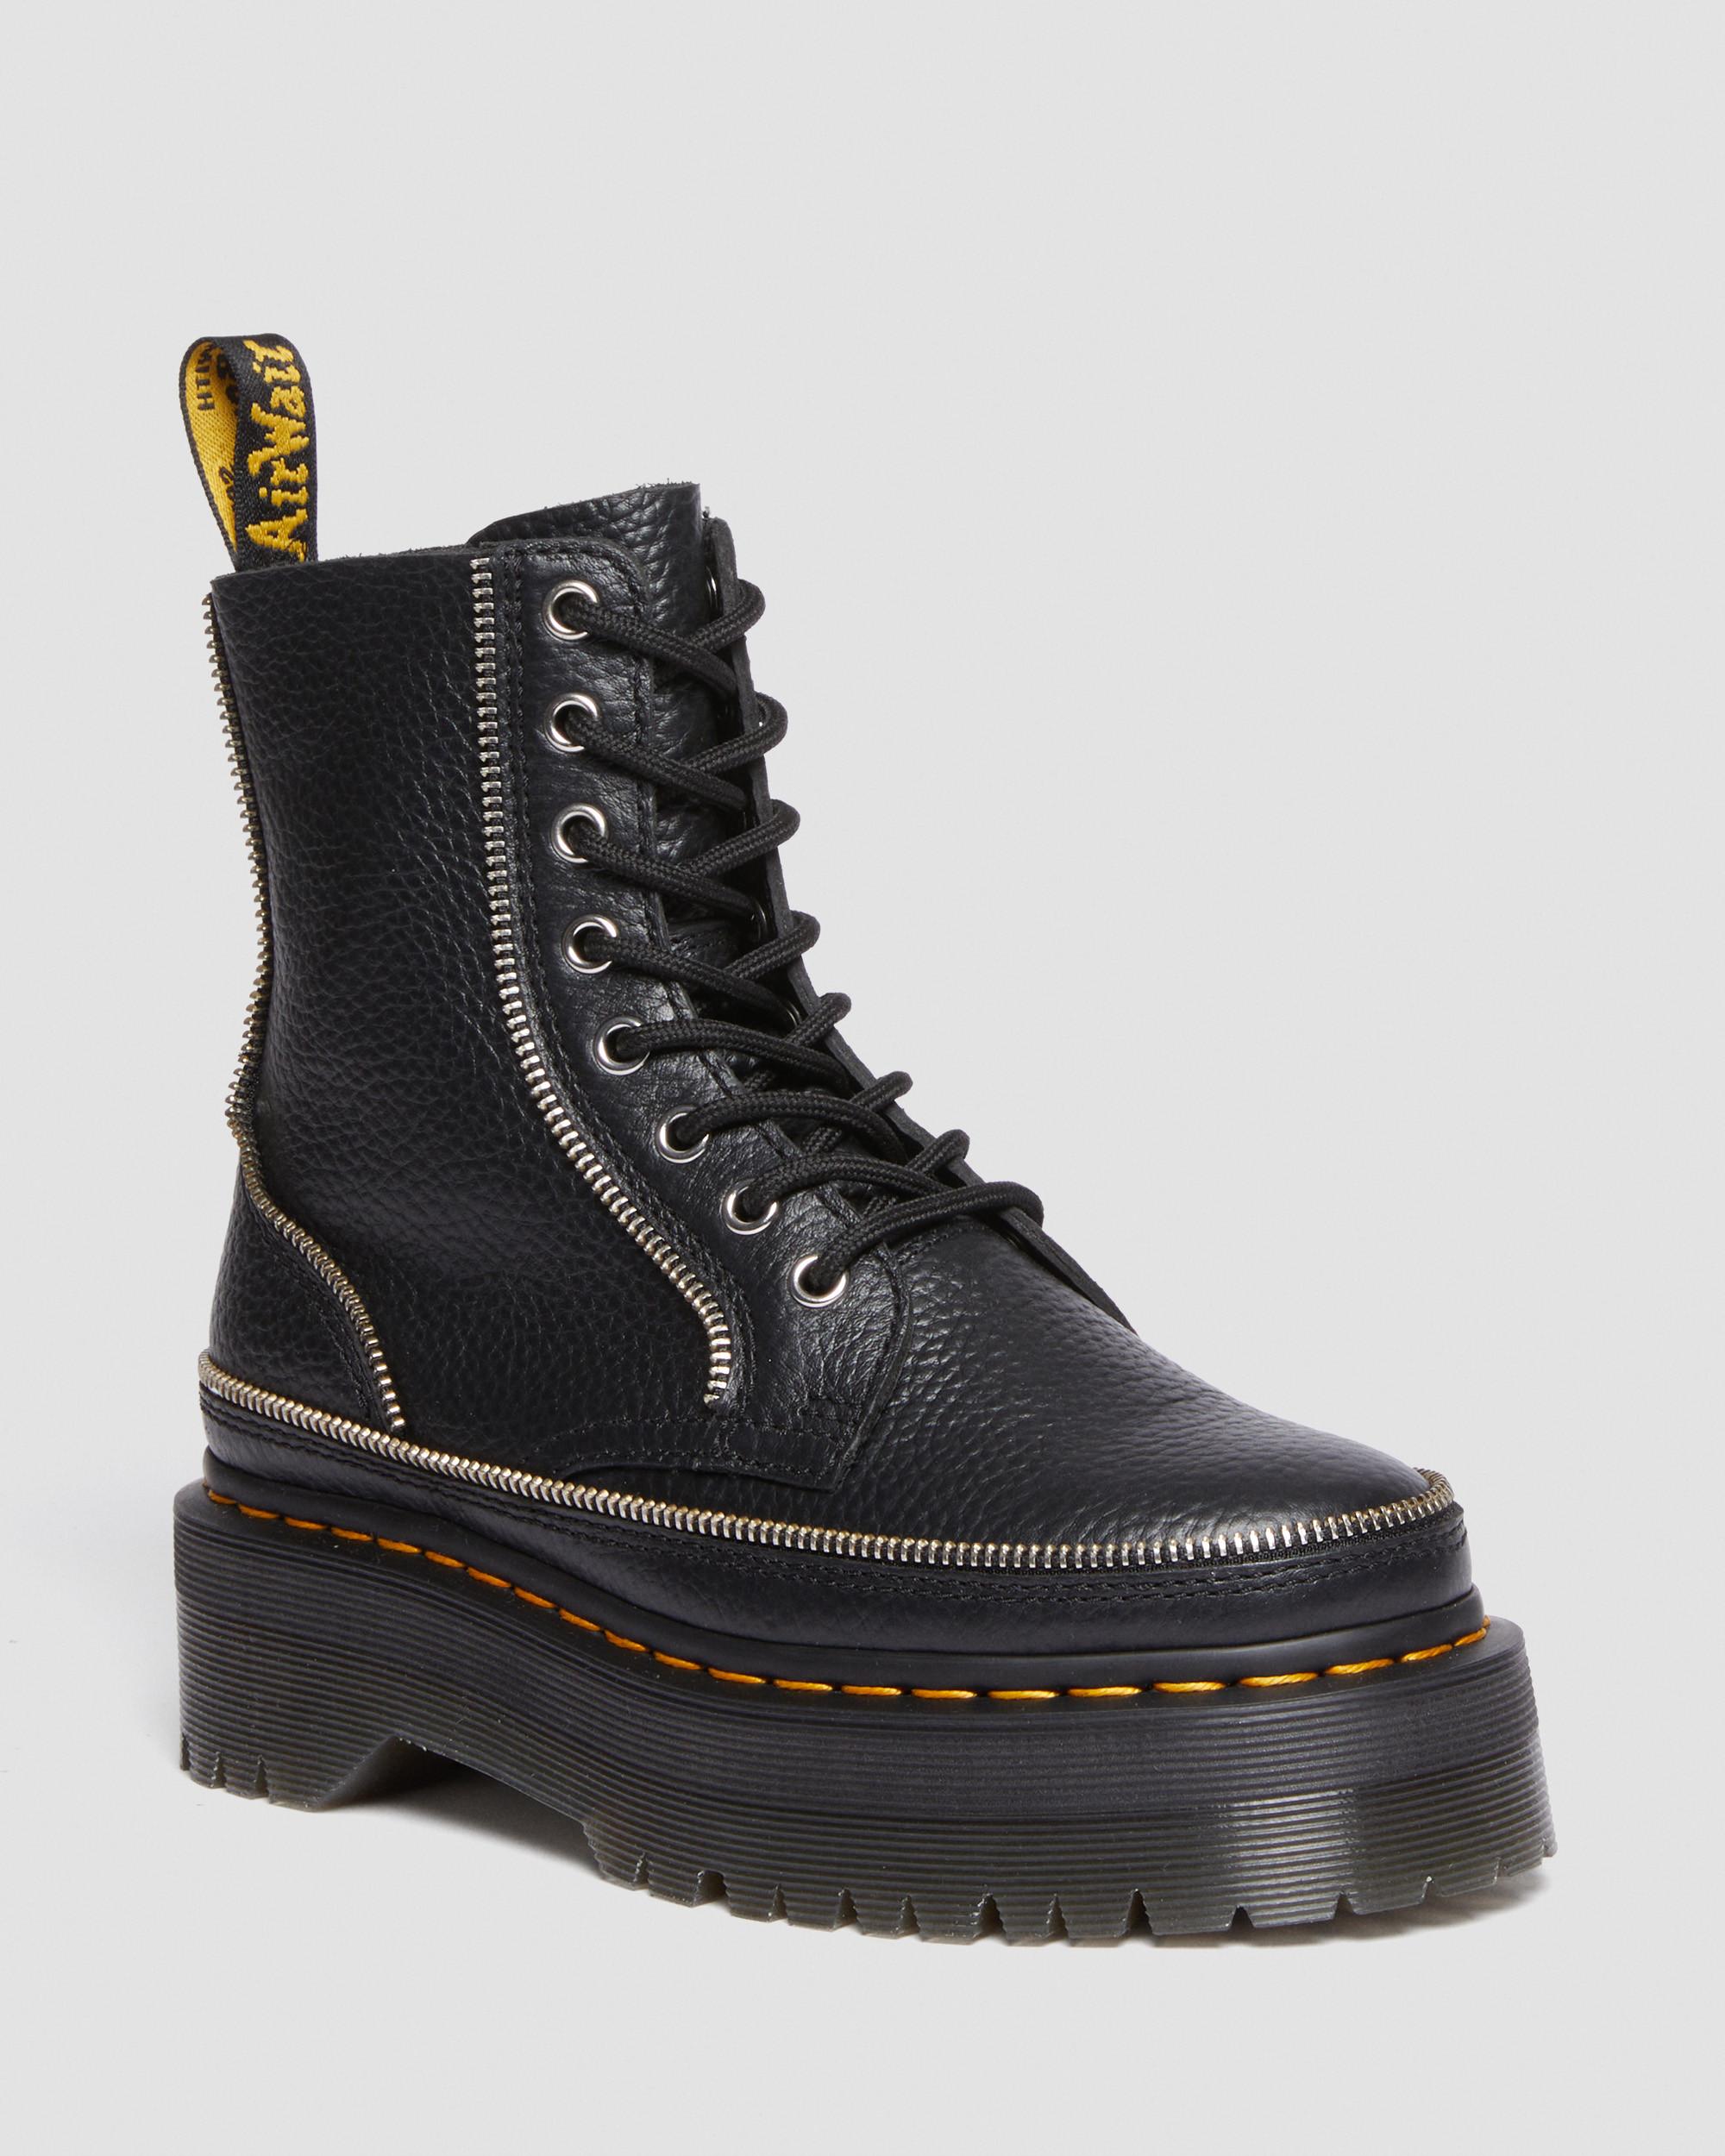 Jadon Boot Alternative Leather Platforms in Black | Dr. Martens